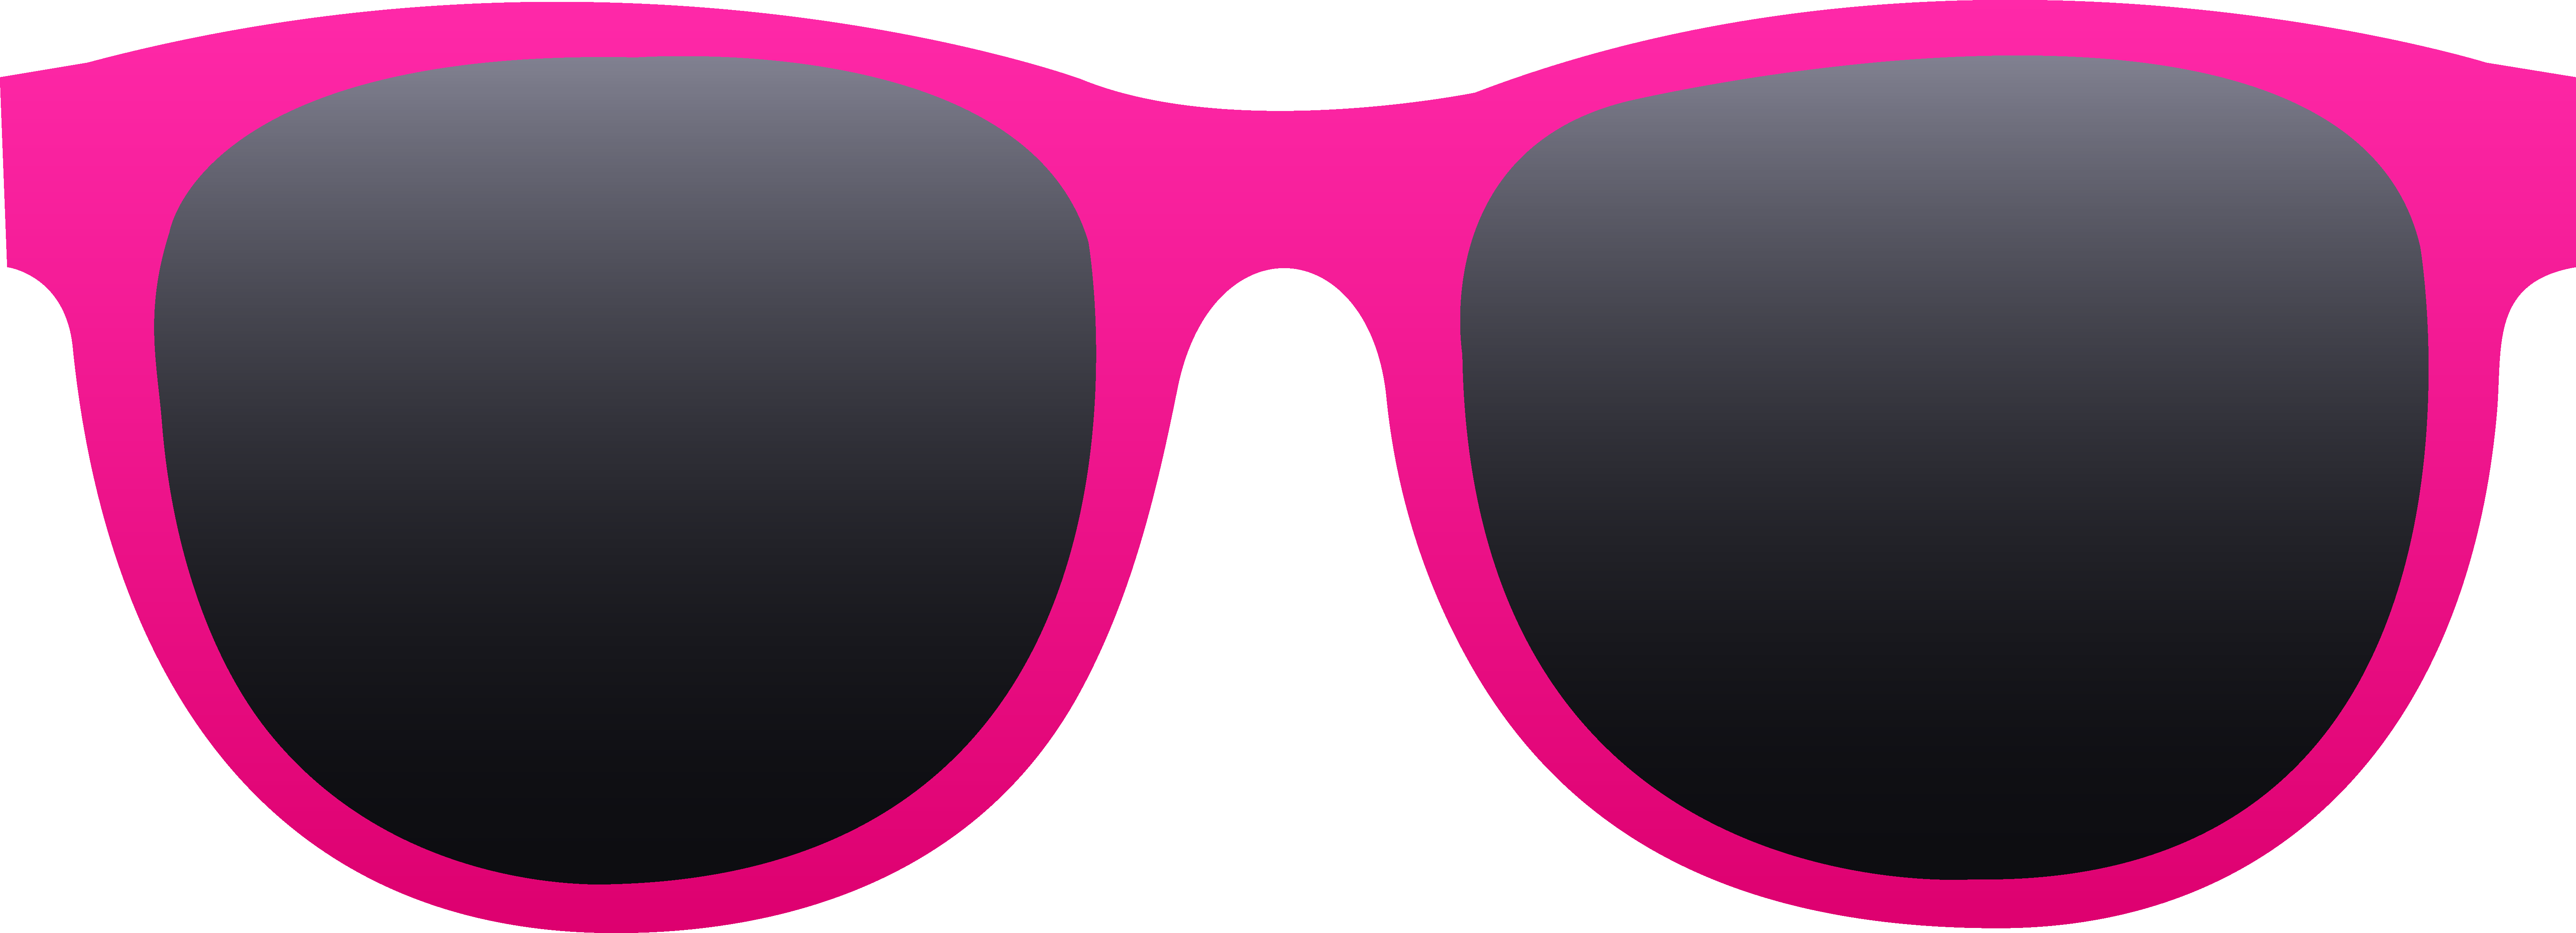 sunglasses clipart - Sun Glasses Clip Art